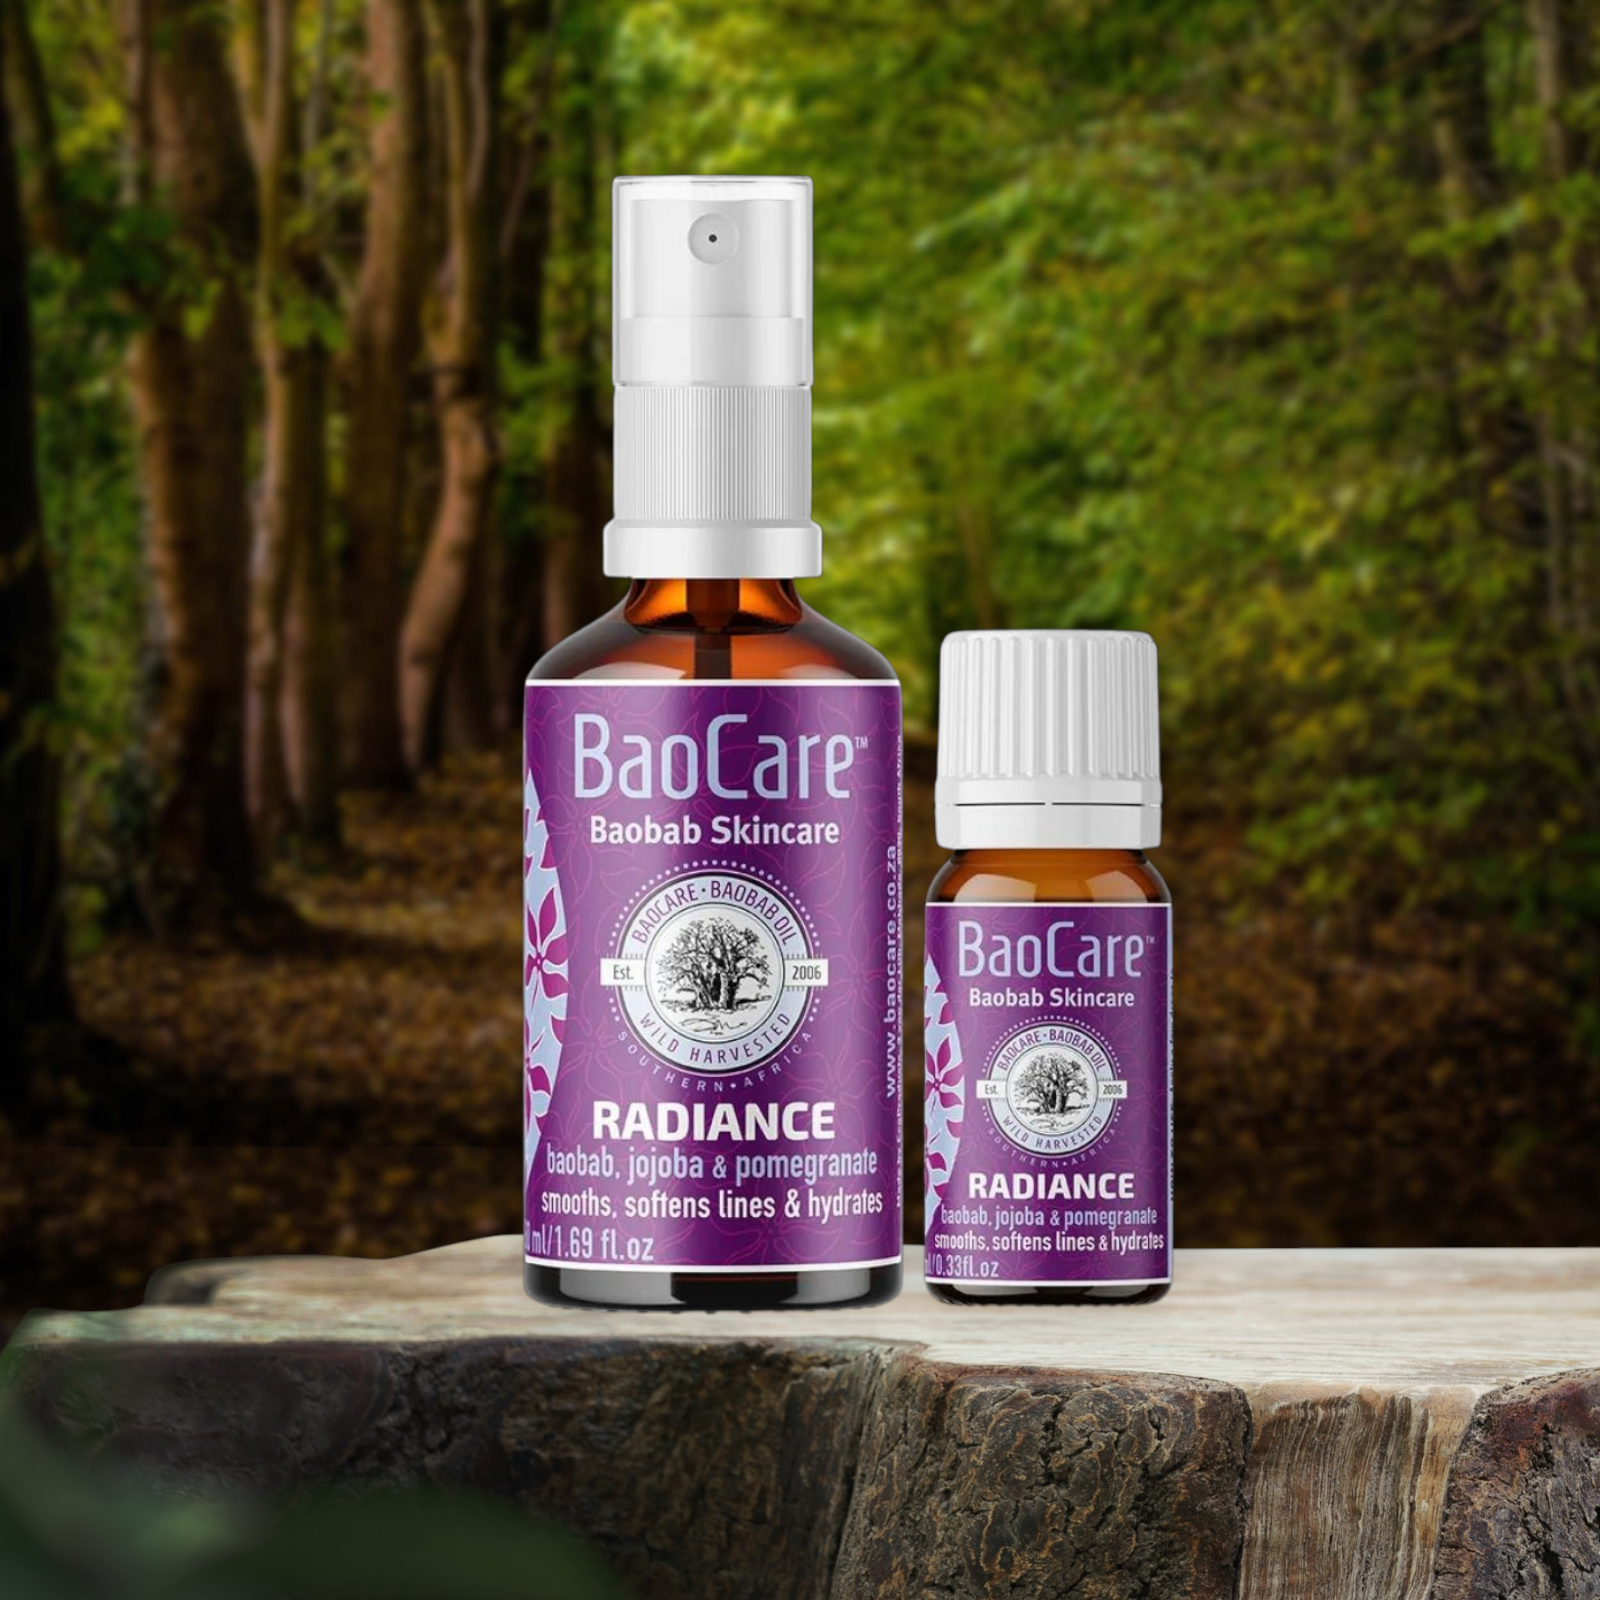 En flaske Baocare Radiance 50ml kropspleje og en flaske aromaterapiolie til velvære og helbred.